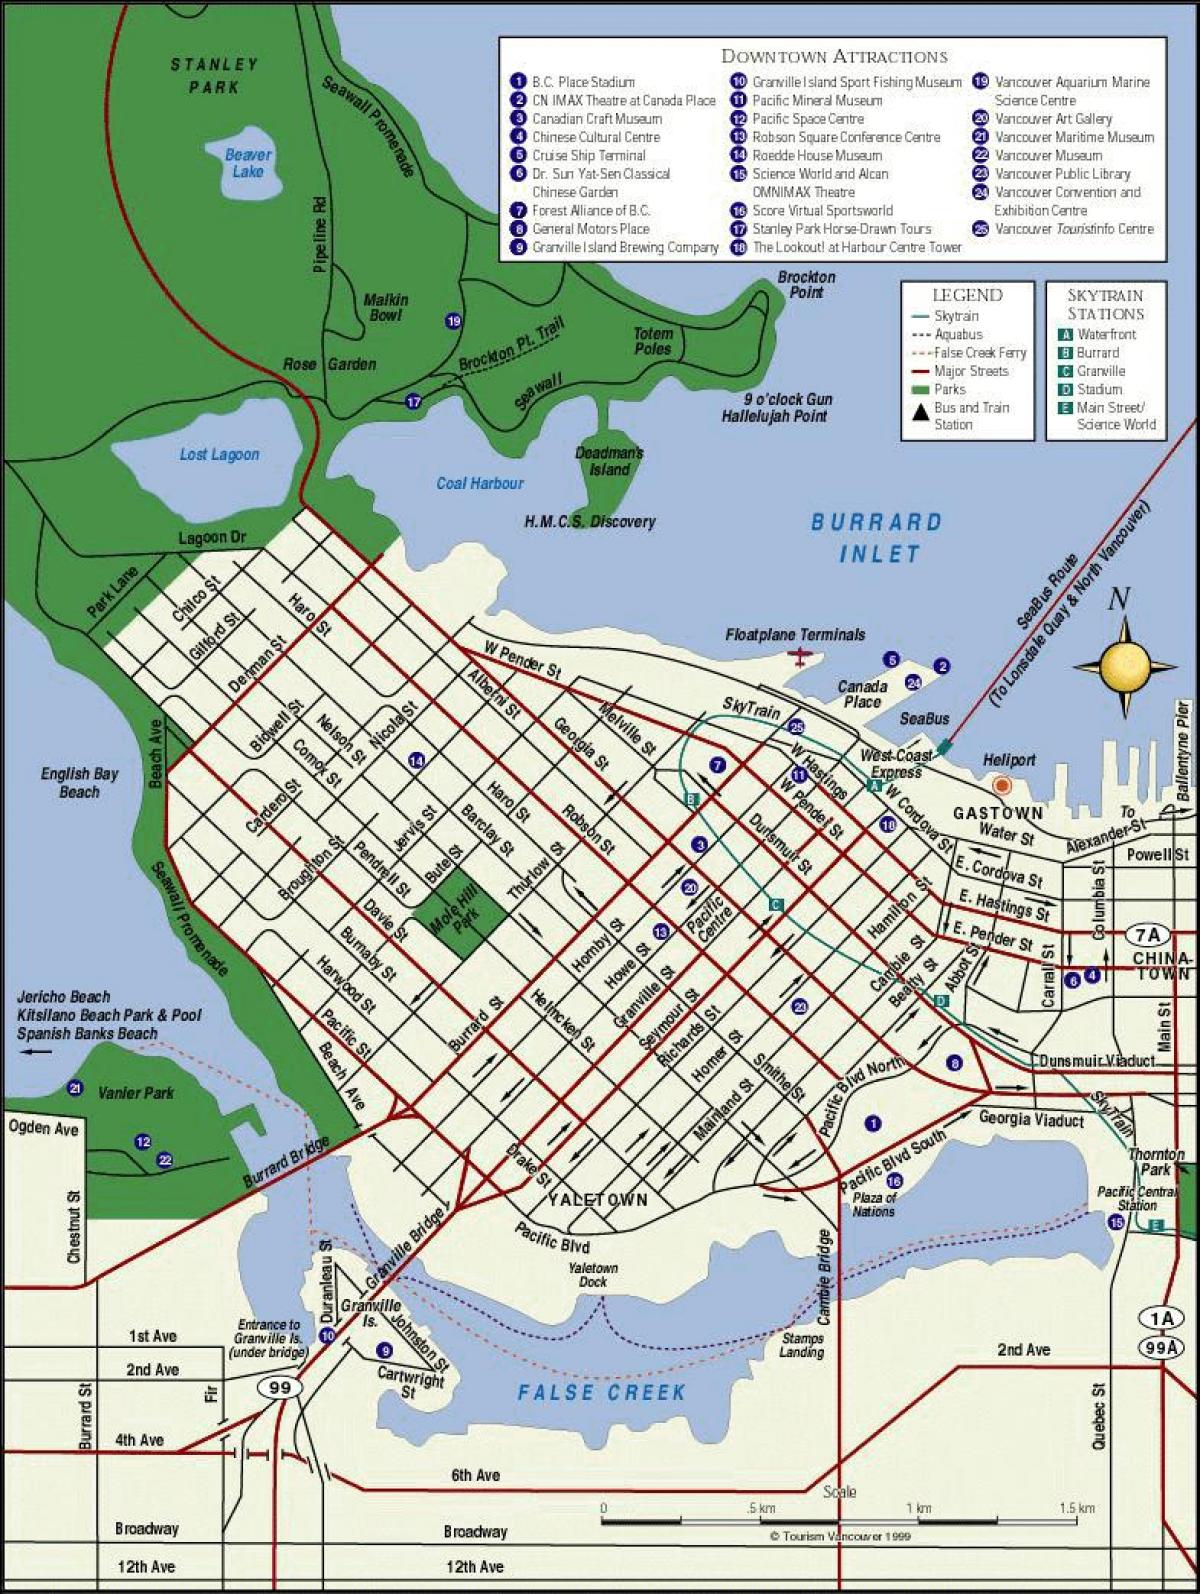 नक्शा वैंकूवर के शहर के केंद्र